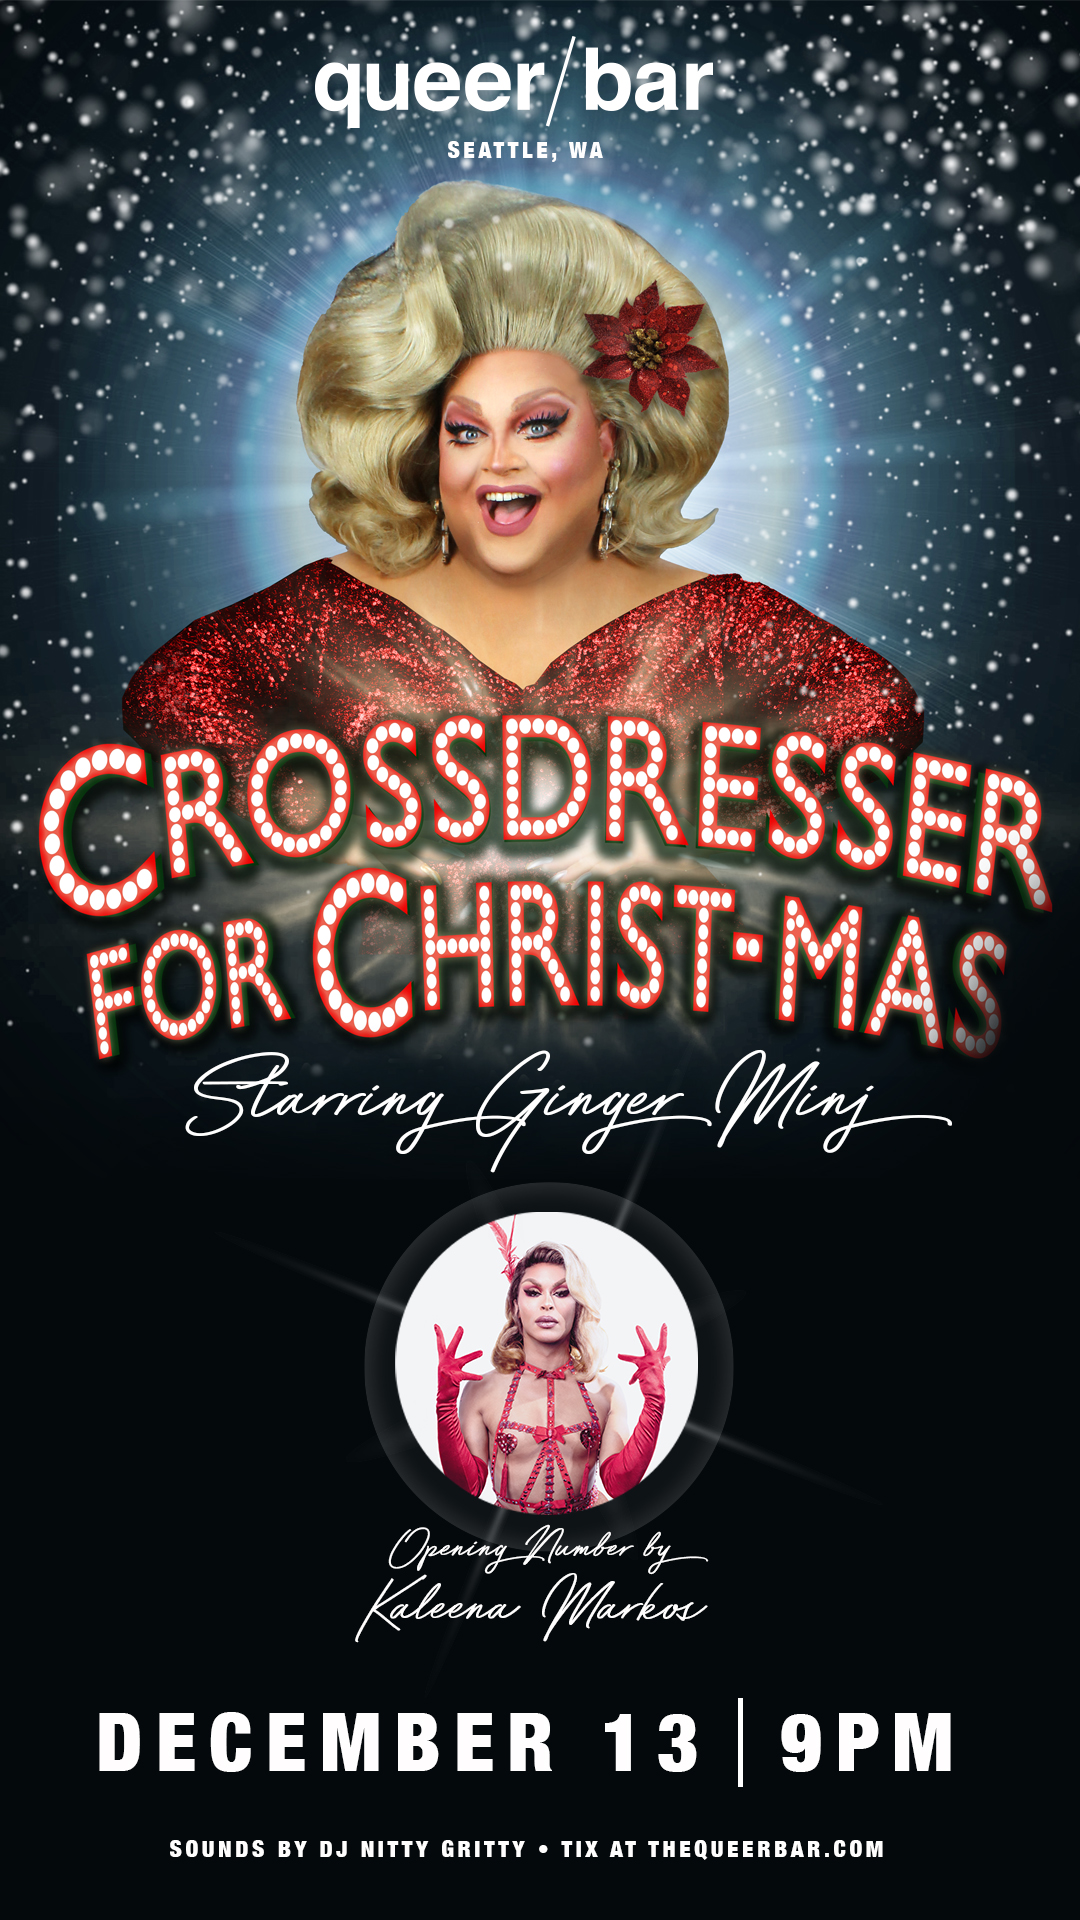 Crossdresser for Christmas starring Ginger Minj